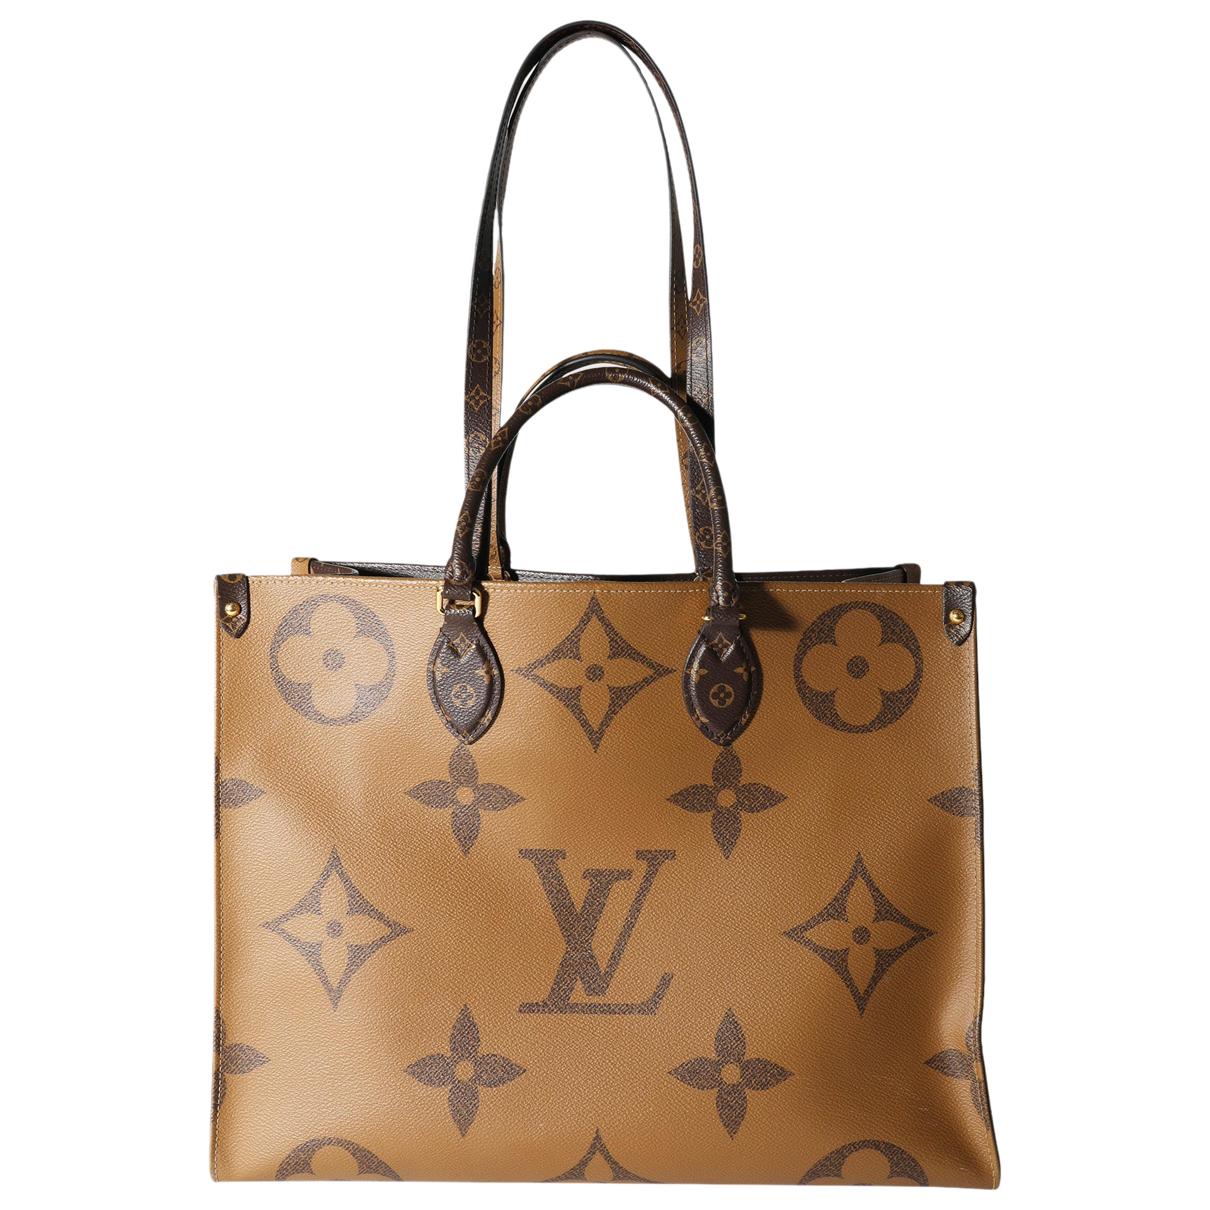 Louis Vuitton Sale - up to 50% - the hottest deals - Vestiaire